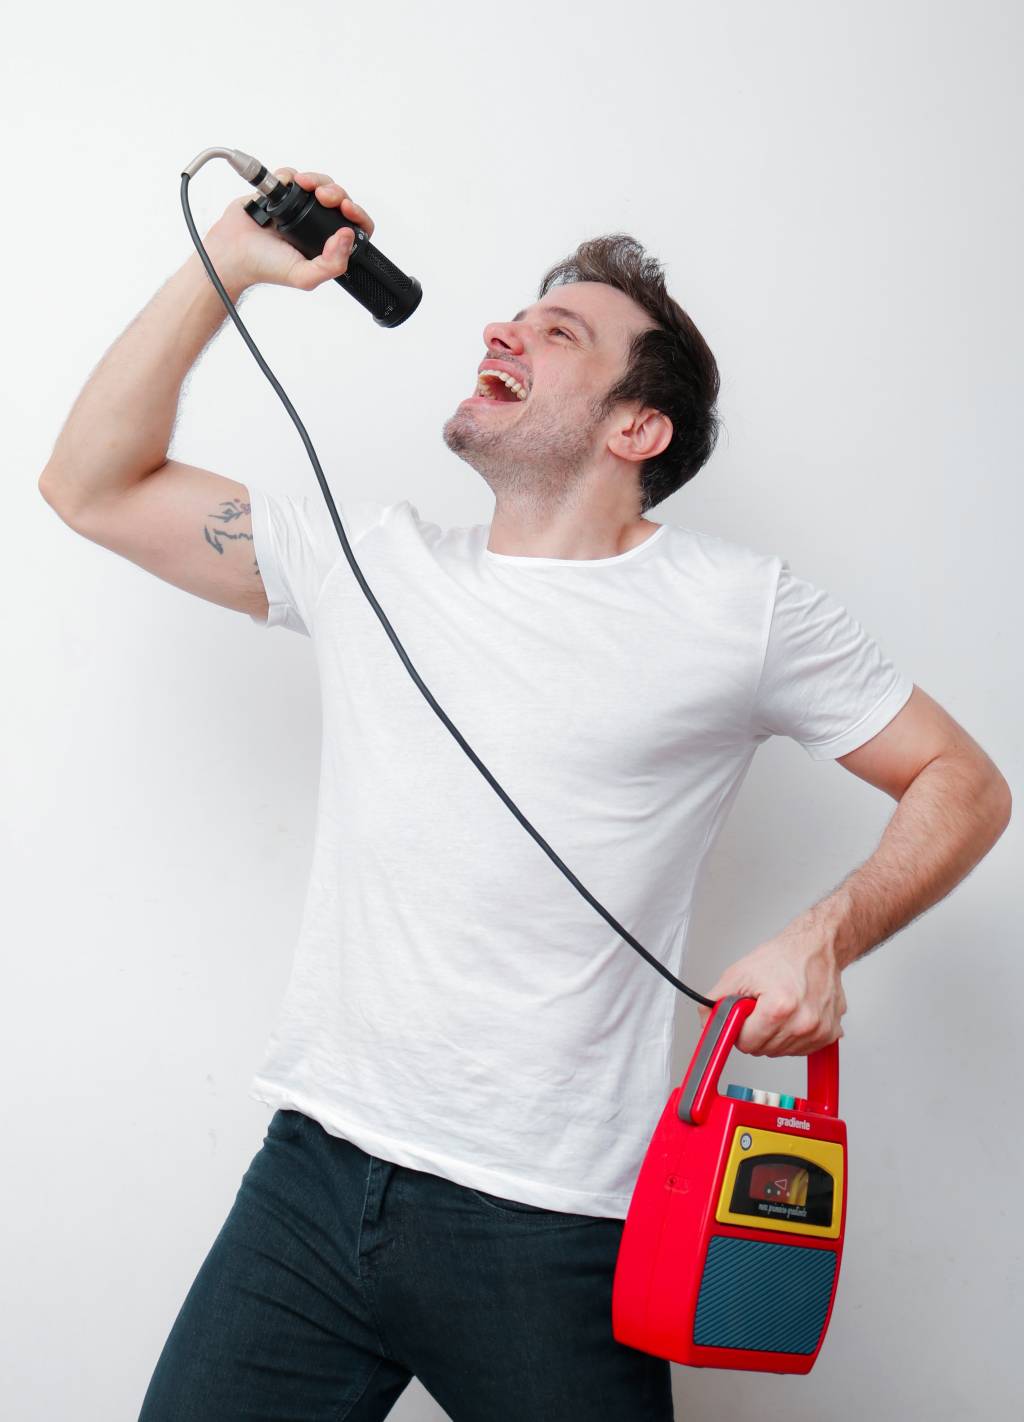 Homem branco posa fingindo cantar com microfone de brinquedo, uma caixa de som vermelha à mão e a outra erguida com o microfone no alto